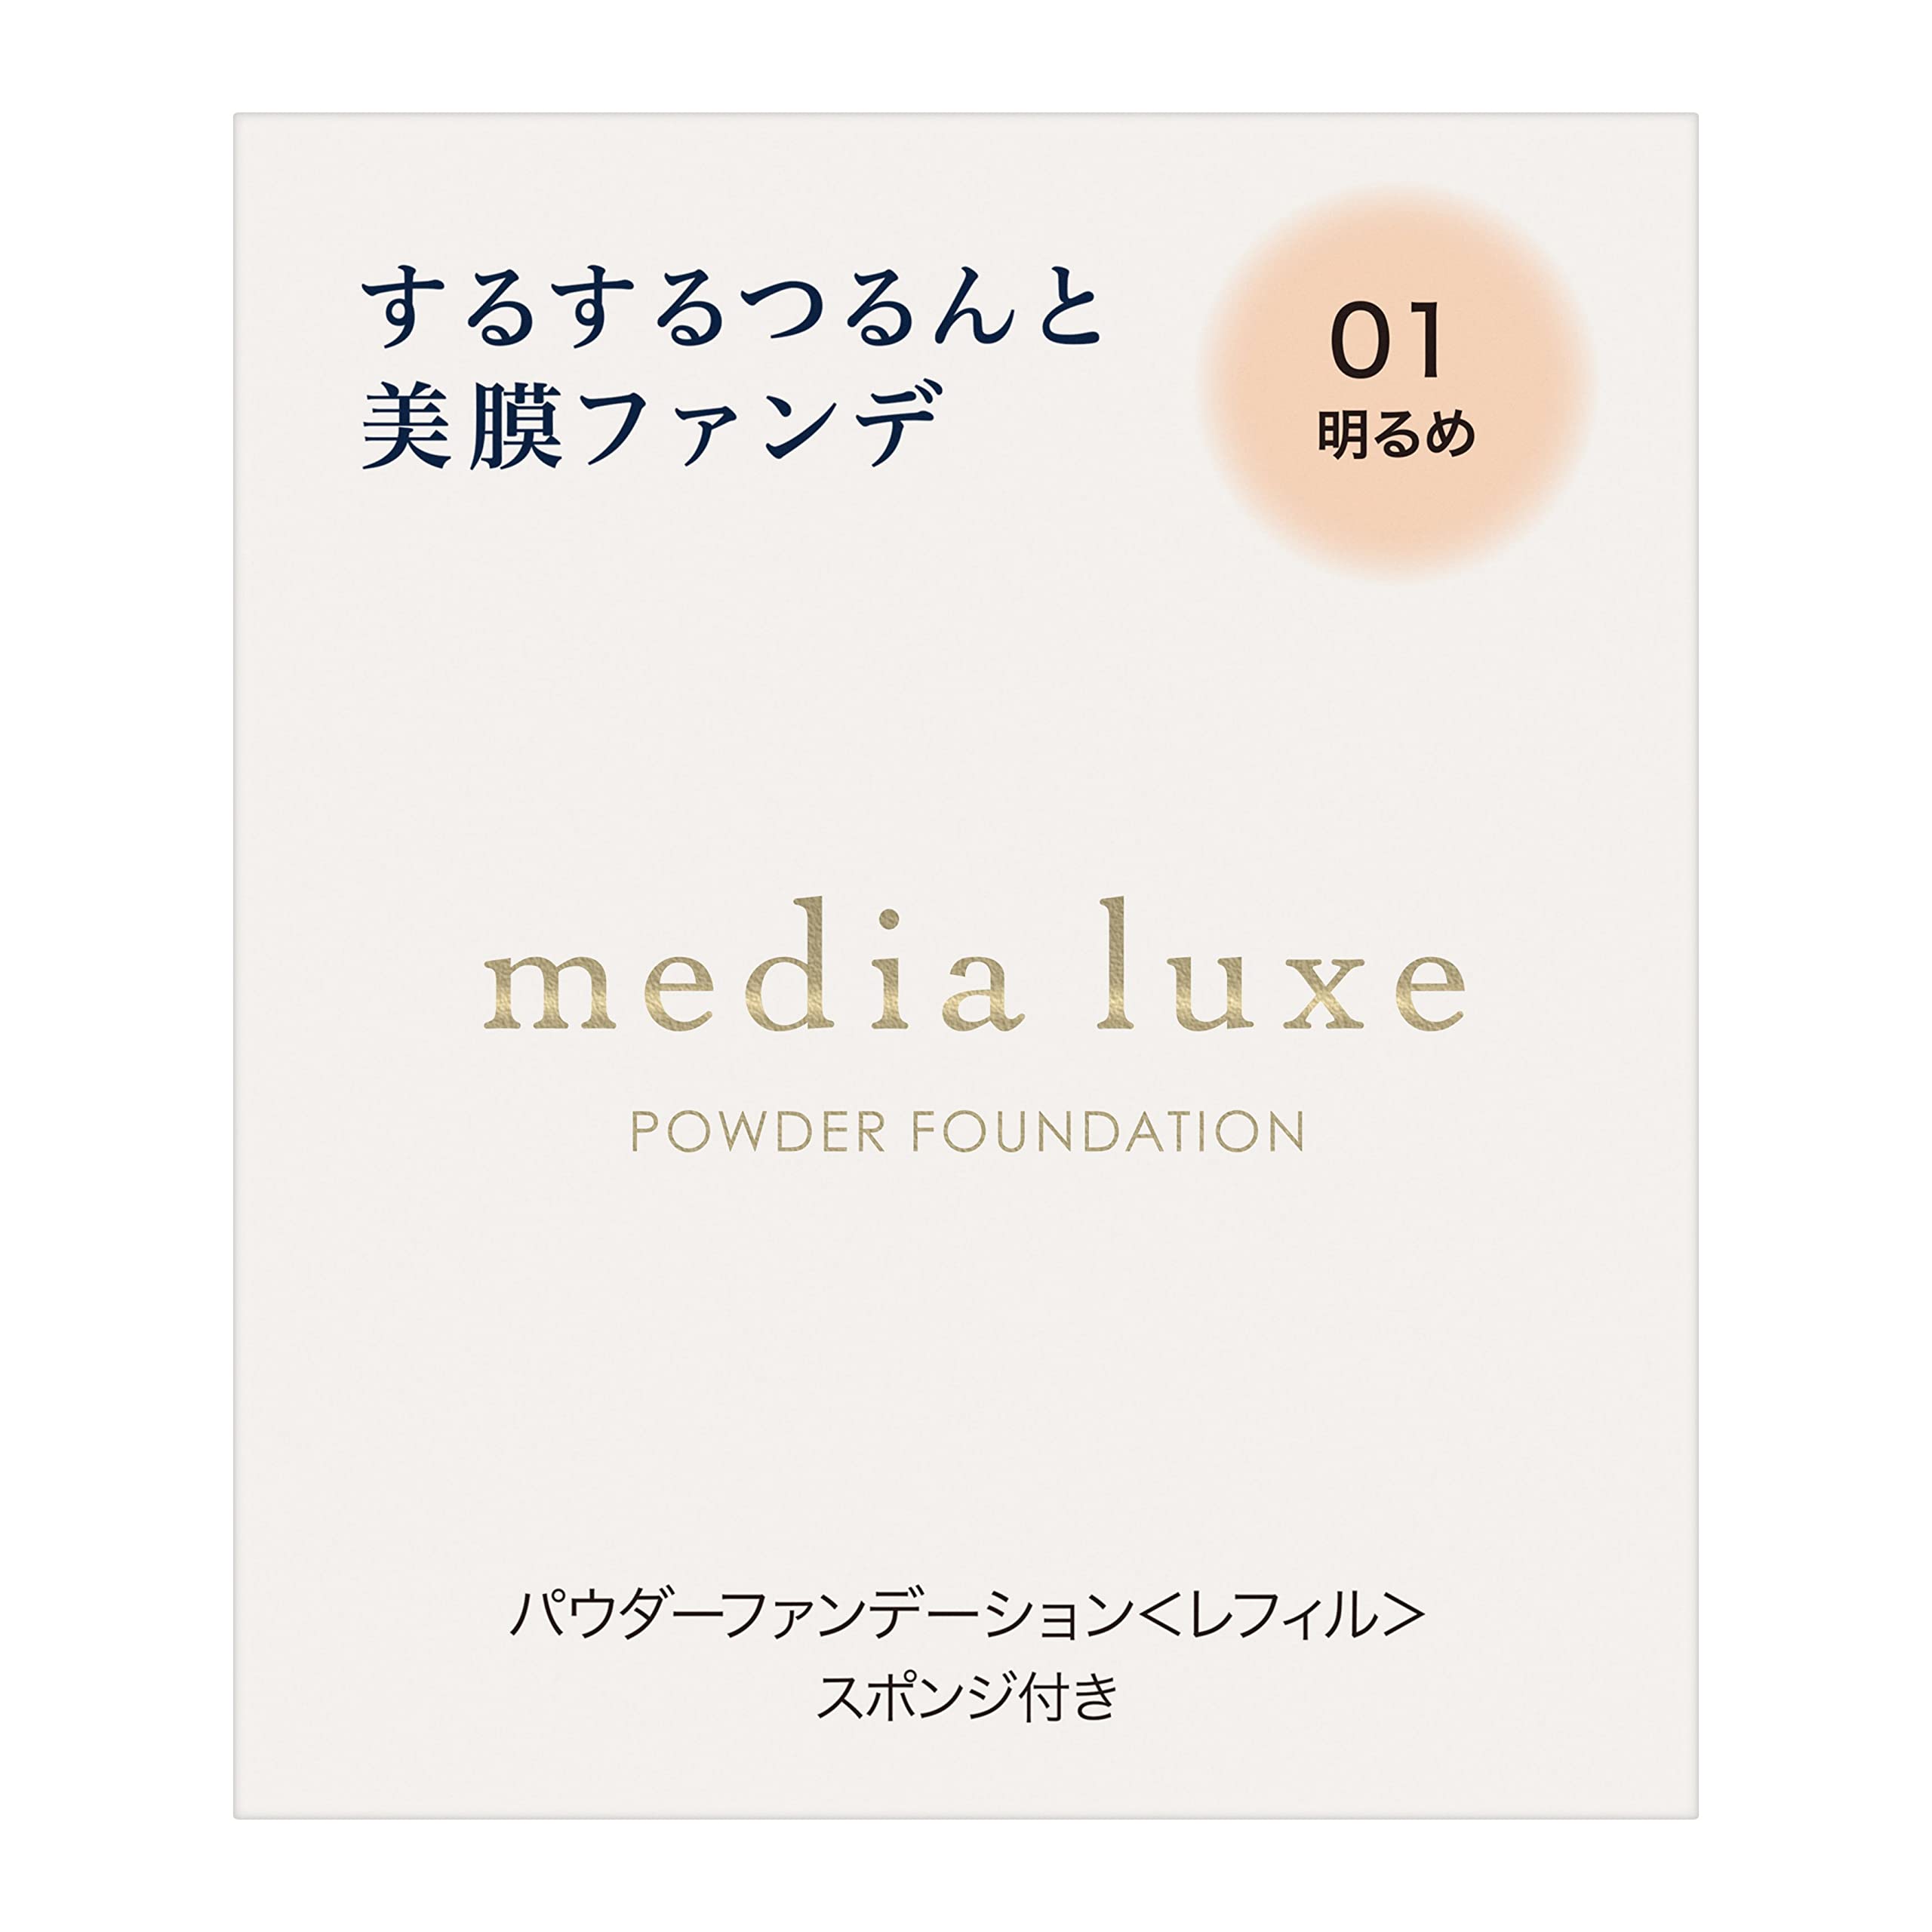 media luxe(メディア リュクス) パウダーファンデーション 01 9グラム (x 1)